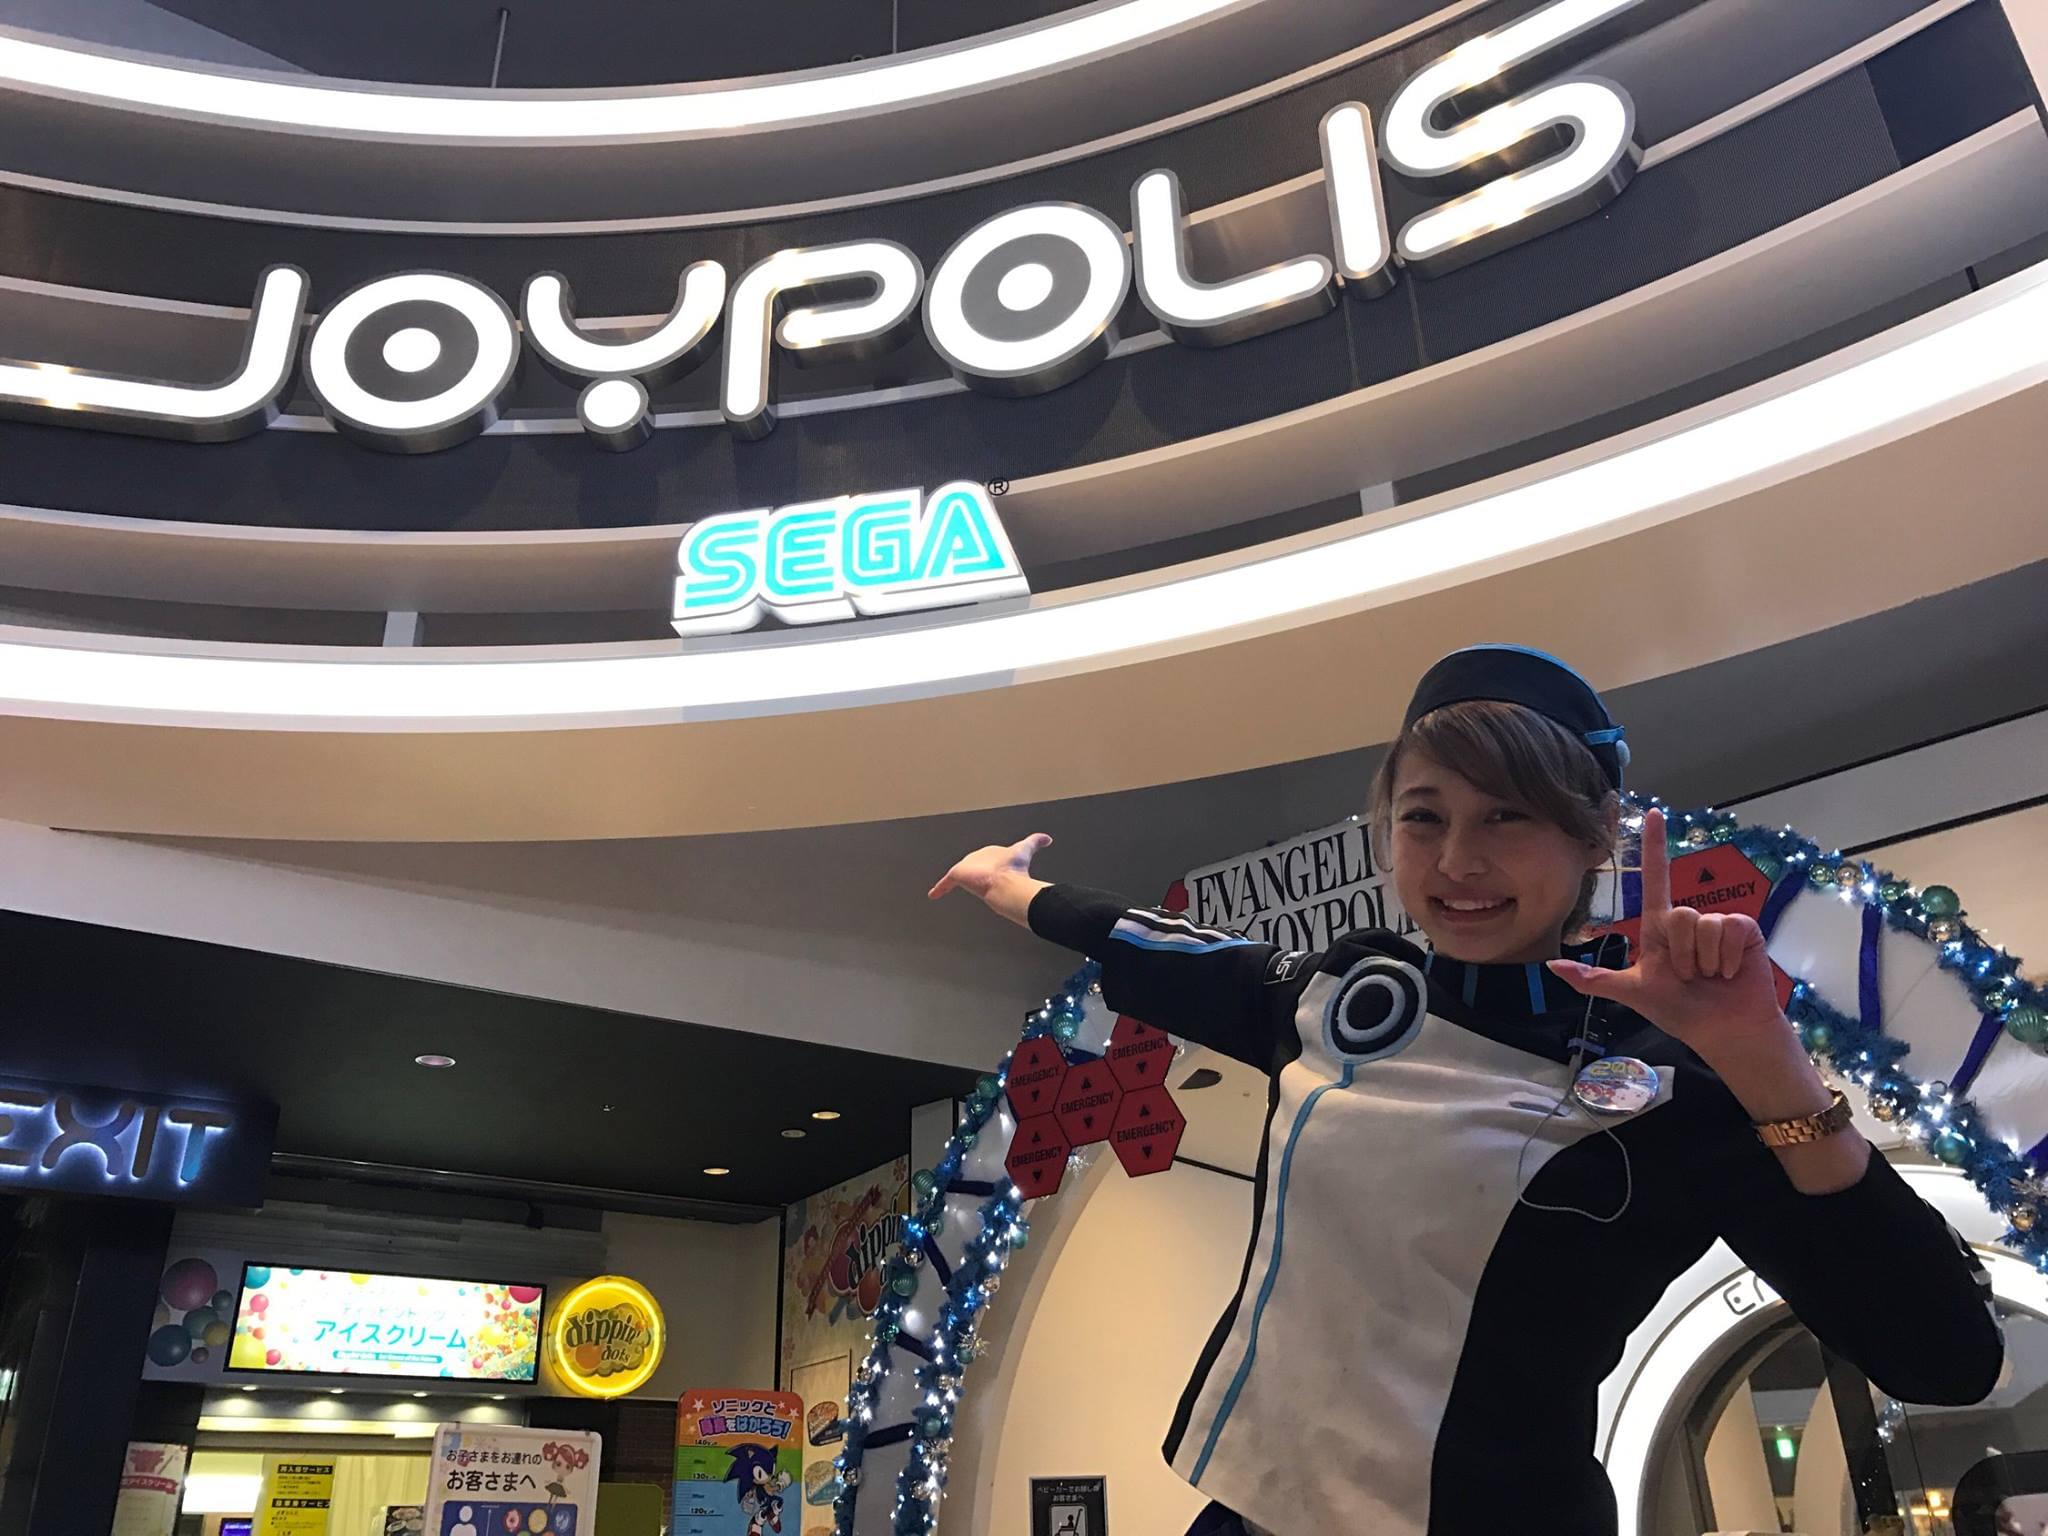 Tokyo Joypolis